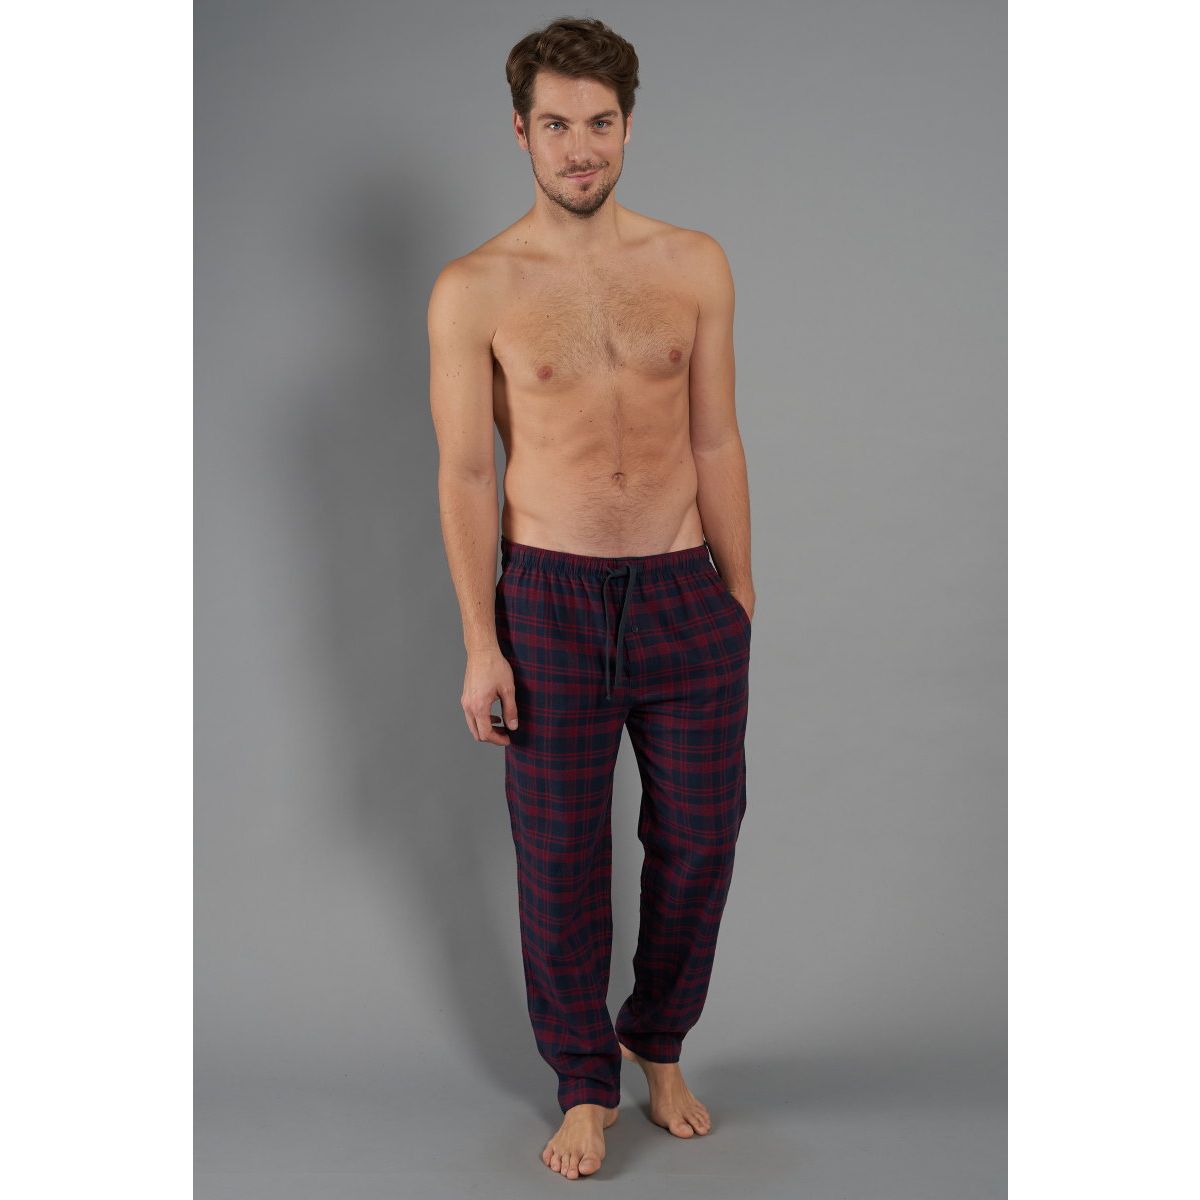 Voorrecht Verdampen vochtigheid Flanellen heren pyjamabroek van Tom Tailor | Gratis verzending | Gratis  retour | Snel in huis | Online de mooiste pyjama's, nachthemden, ondermode  en meer